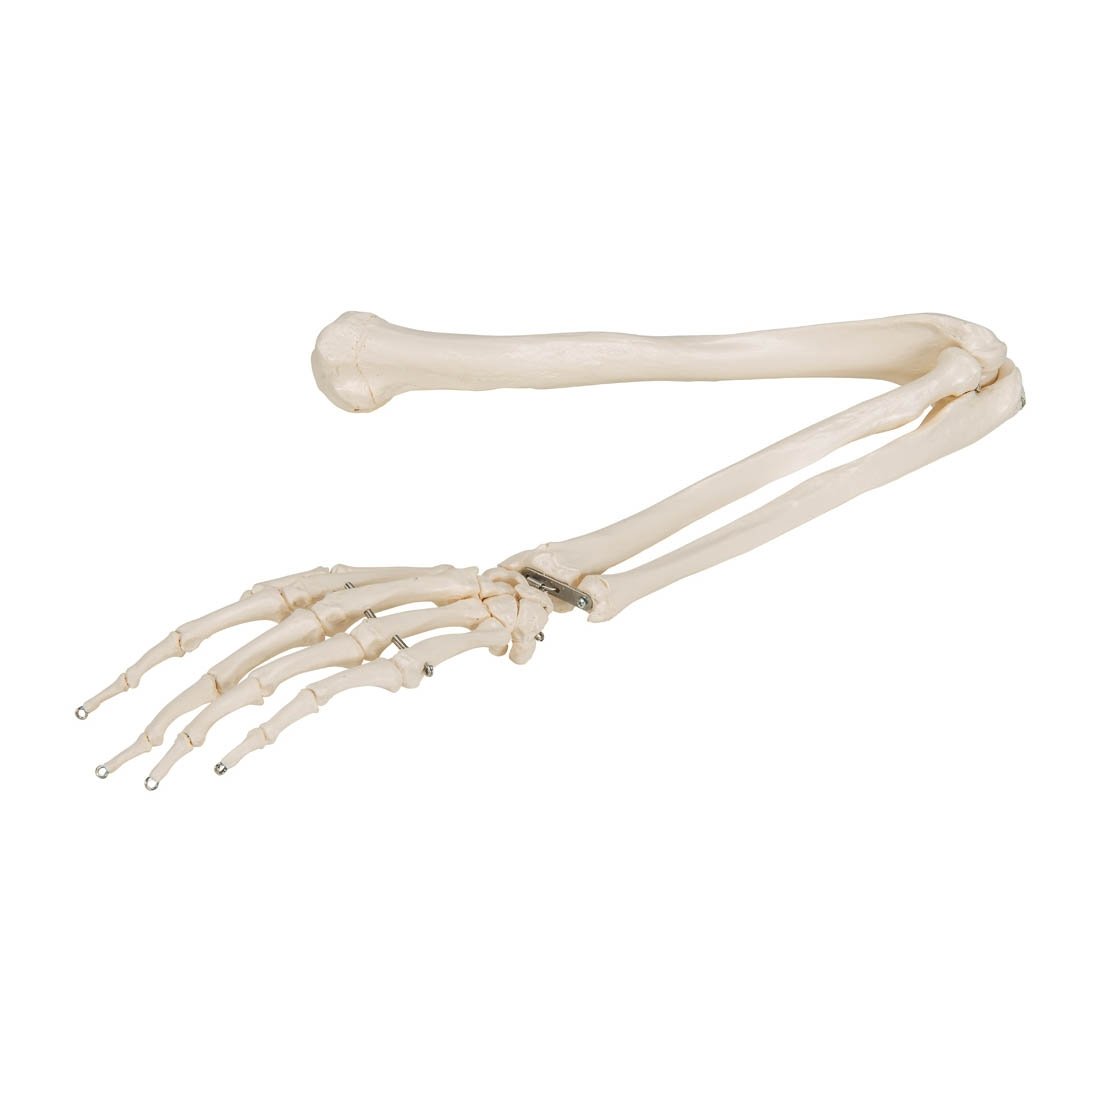 skeleton arm anatomy